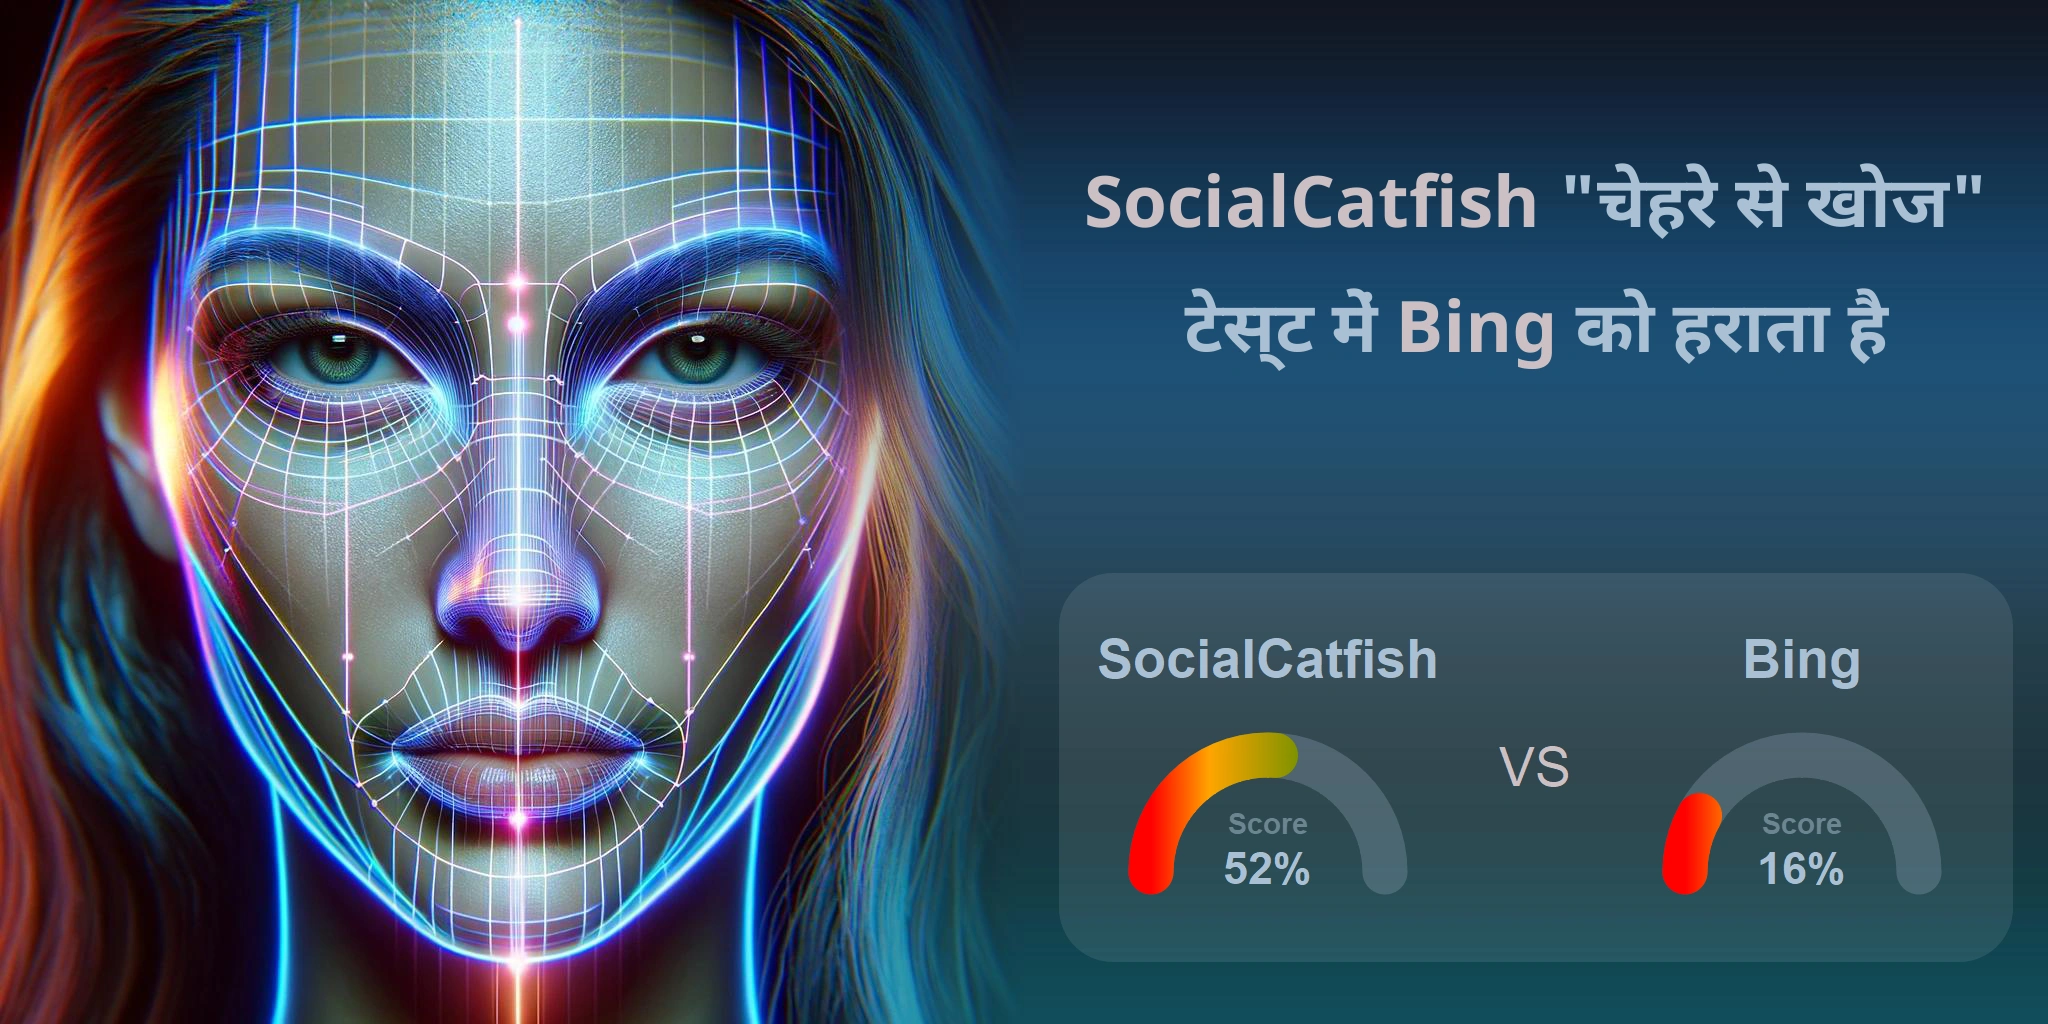 चेहरे की खोज के लिए कौन बेहतर है: <br>Bing या SocialCatfish?